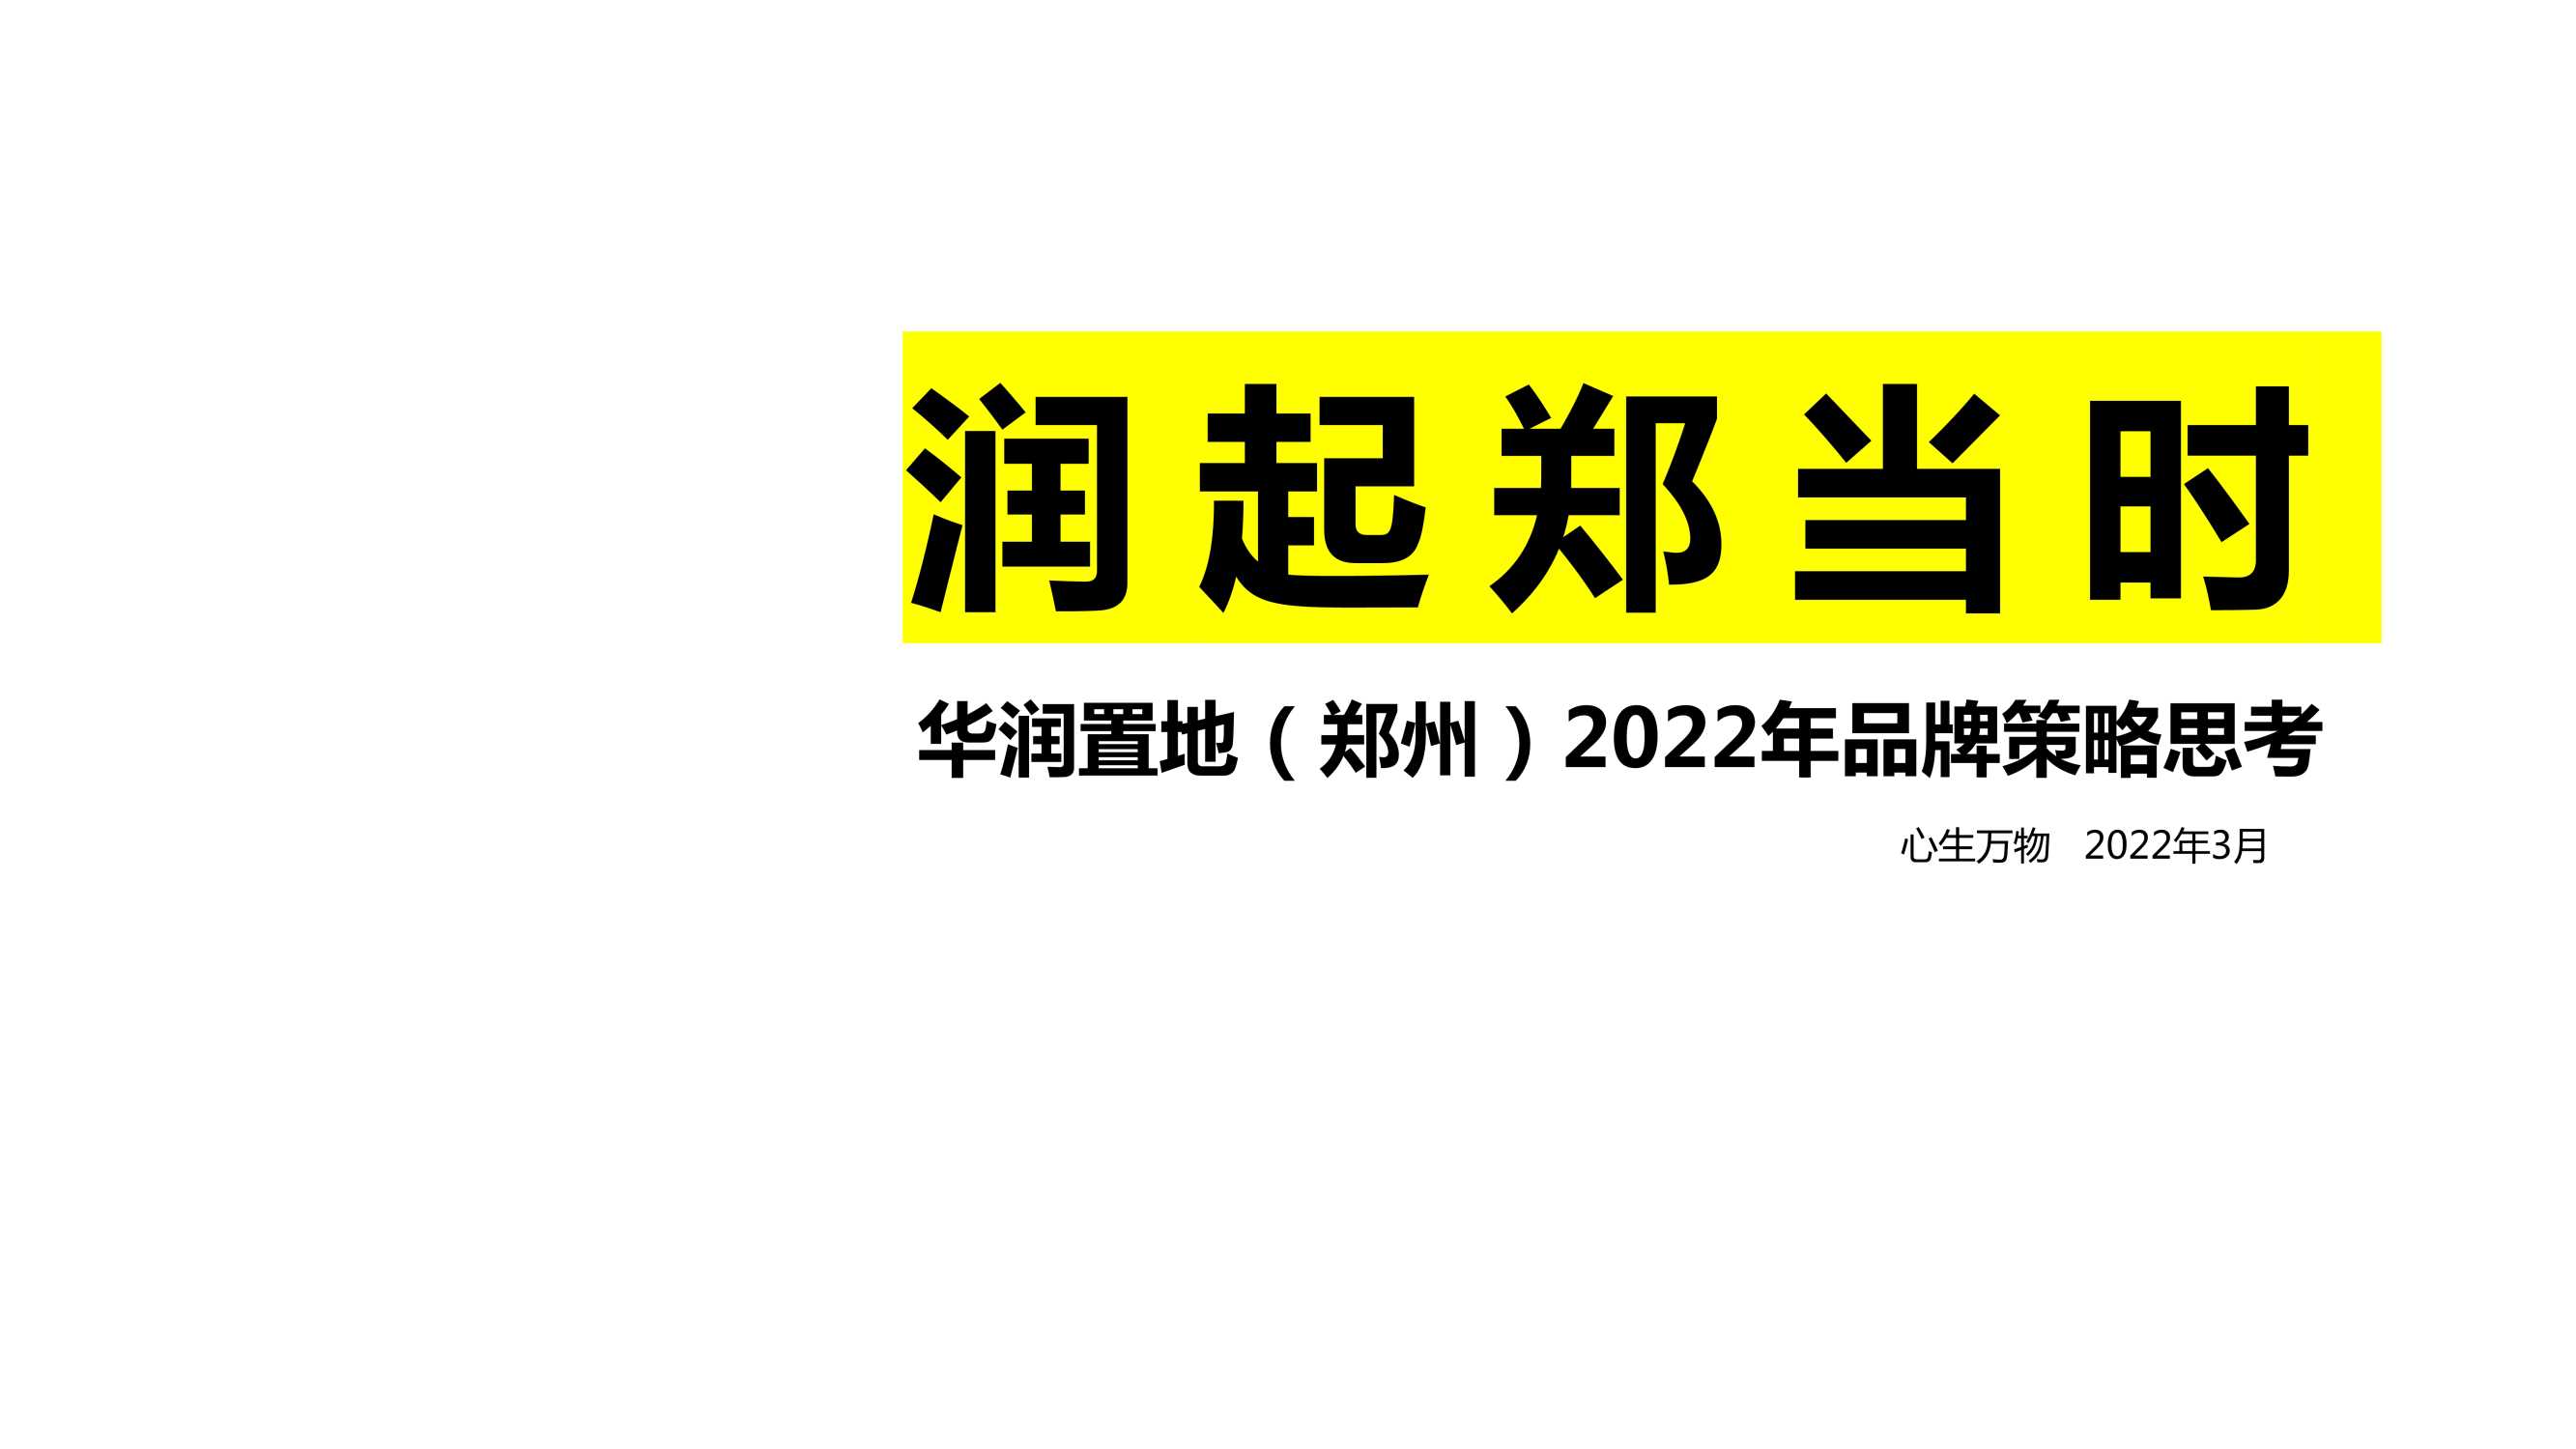 2022深圳心生万物-华润品牌2022年度策略推广全案156页【pdf】